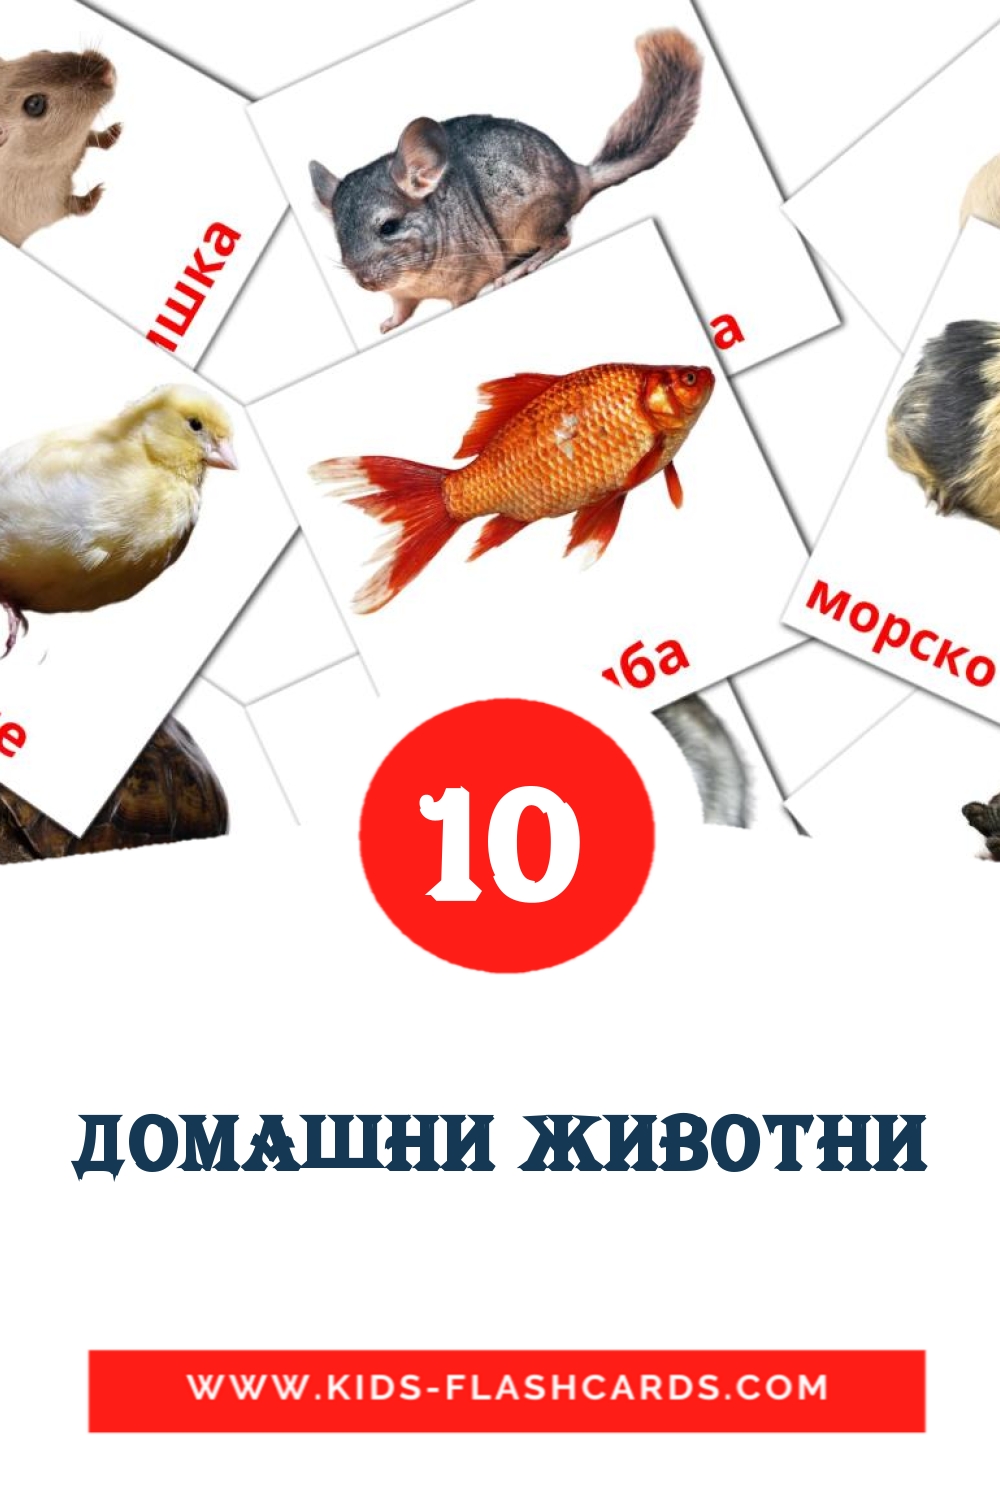 10 Домашни животни Bildkarten für den Kindergarten auf bashkir